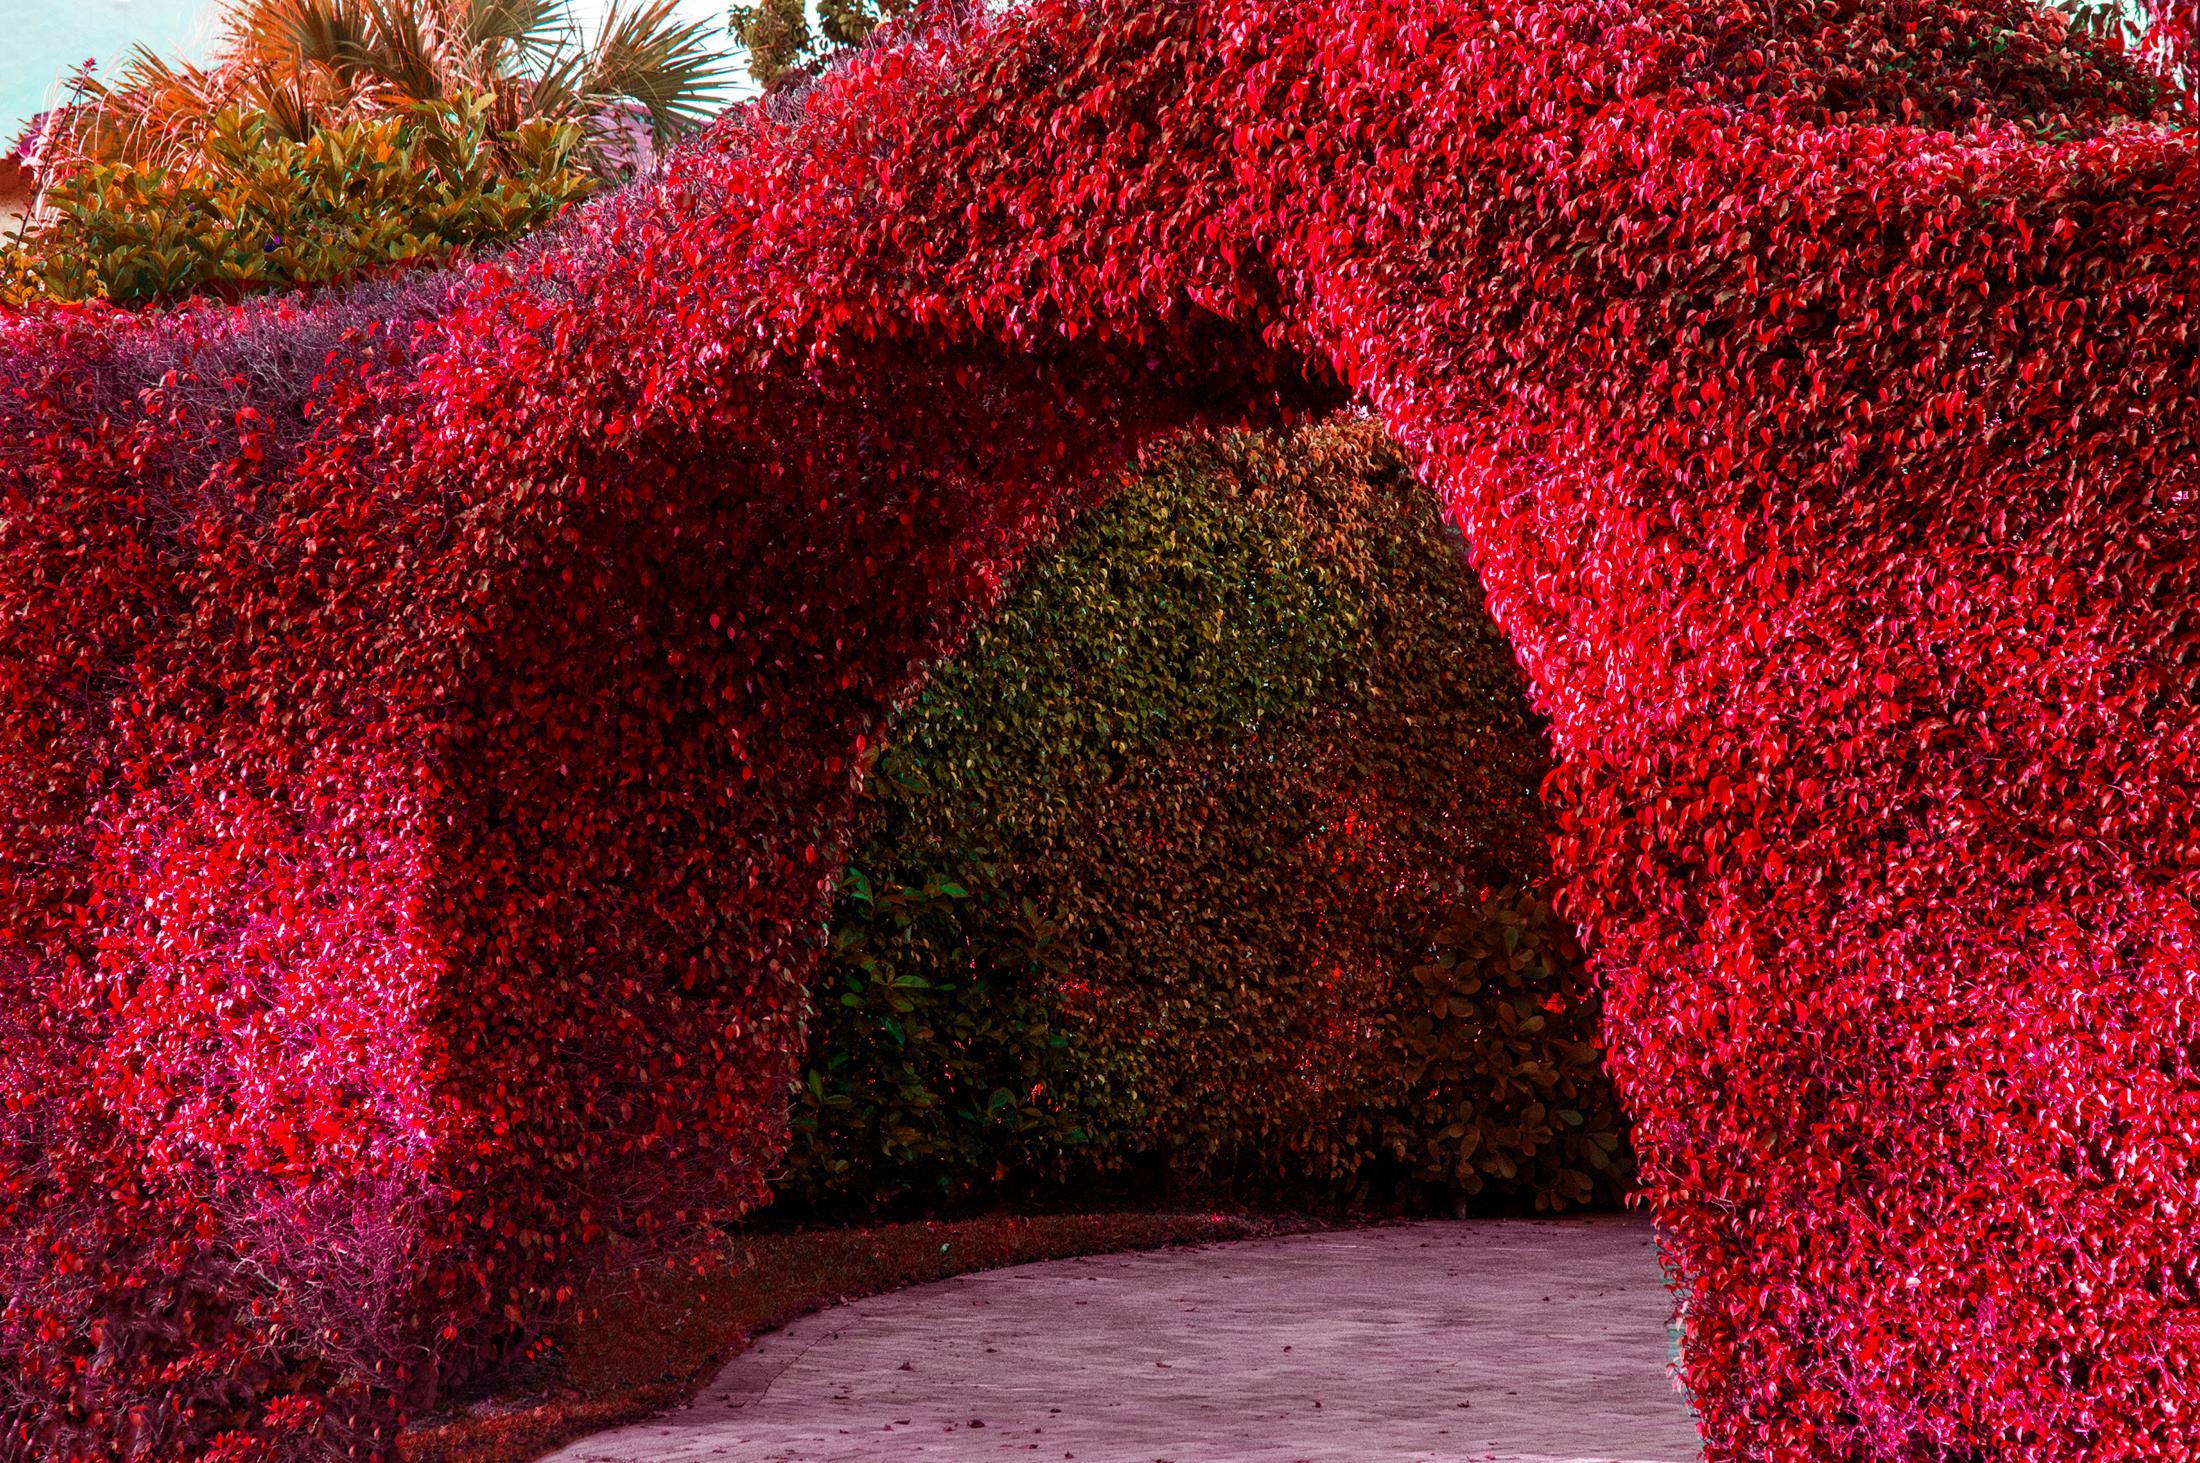 Hedge Fun – Palm Beach Arch – schlanke Schränke vergessen, um die Shrubs zu fotografieren 